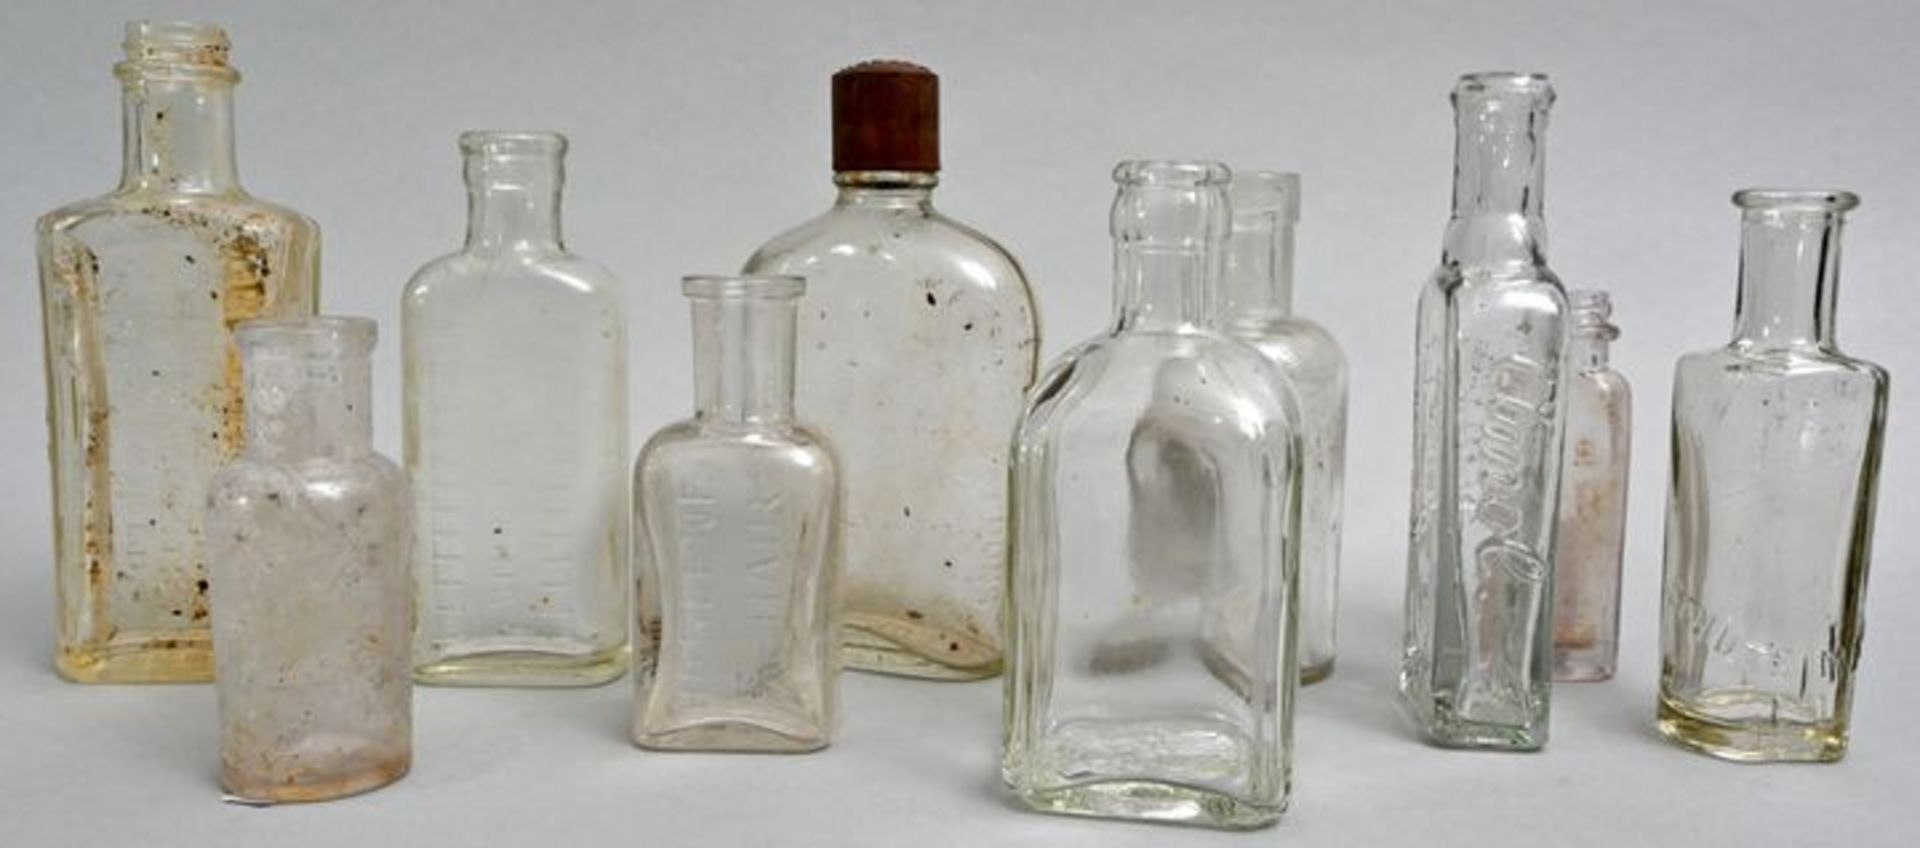 Konvolut von zehn Flaschen/ Medicine or cosmetic bottles